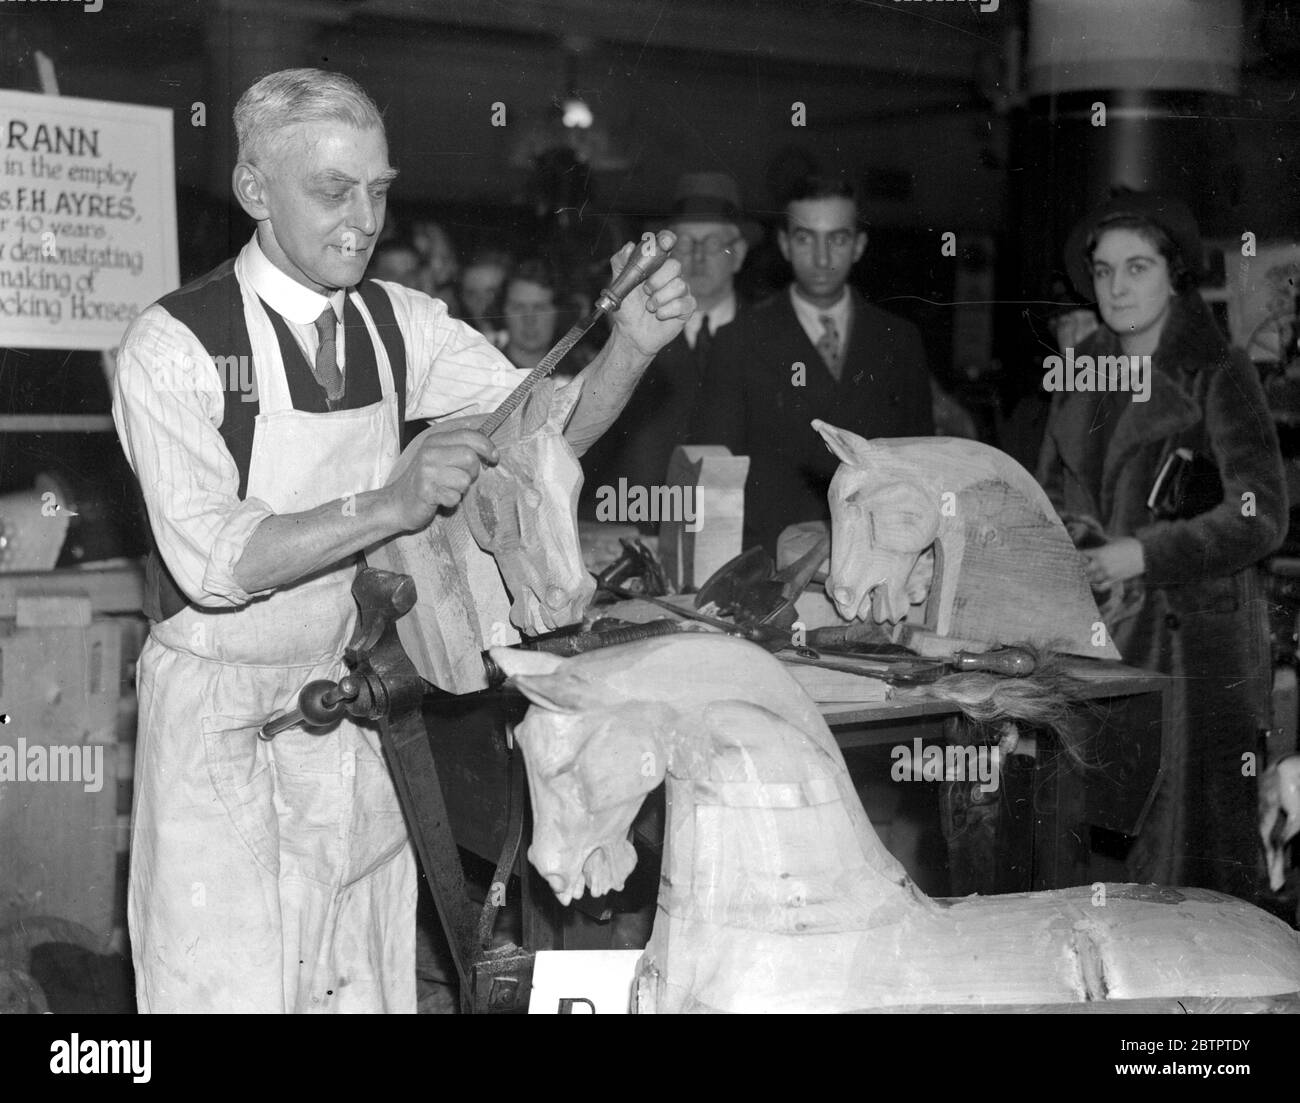 (74 Hillfield Avenue, N.8) M. Rann, fabricant de chevaux en bois depuis 50 ans, présente son métier à Selfridge. 10 mars 1936 Banque D'Images